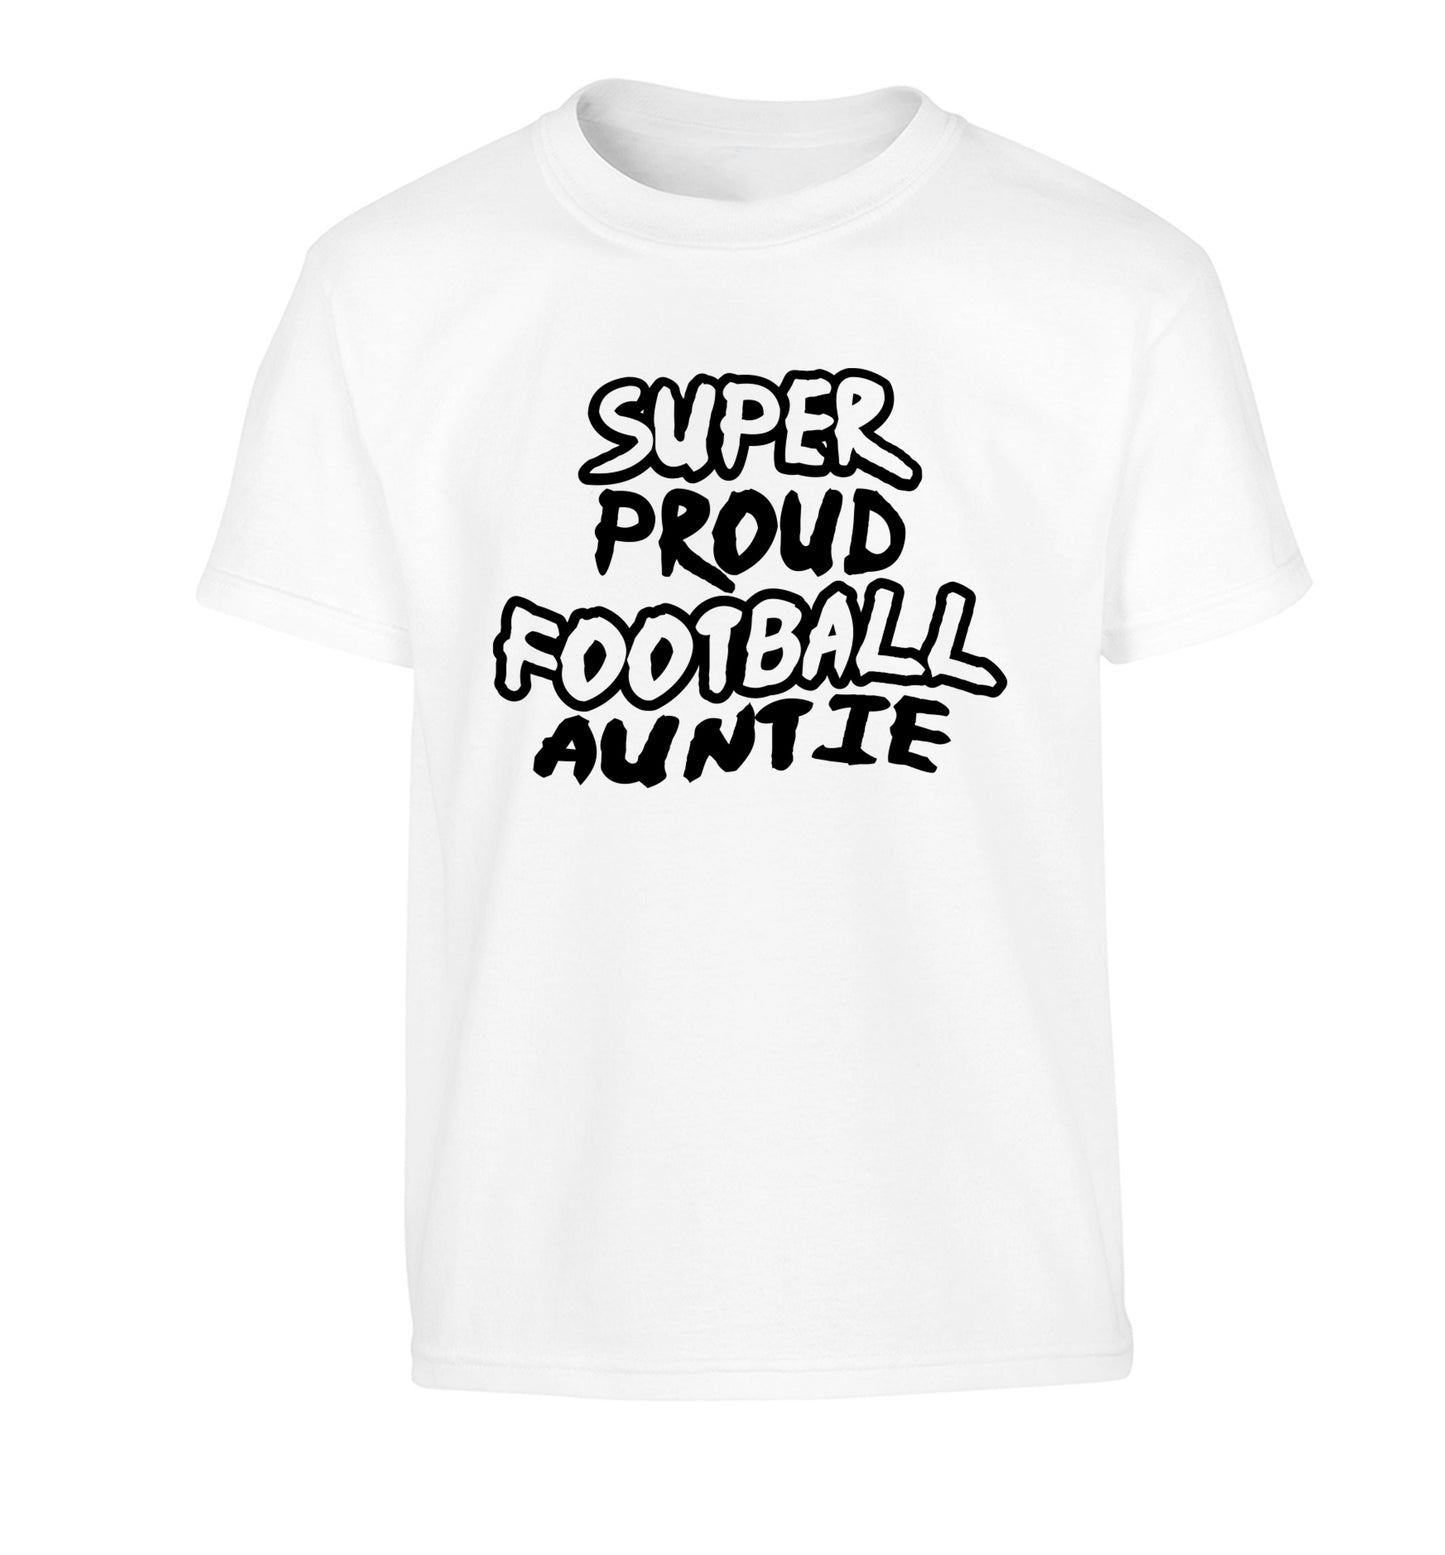 Super proud football auntie Children's white Tshirt 12-14 Years